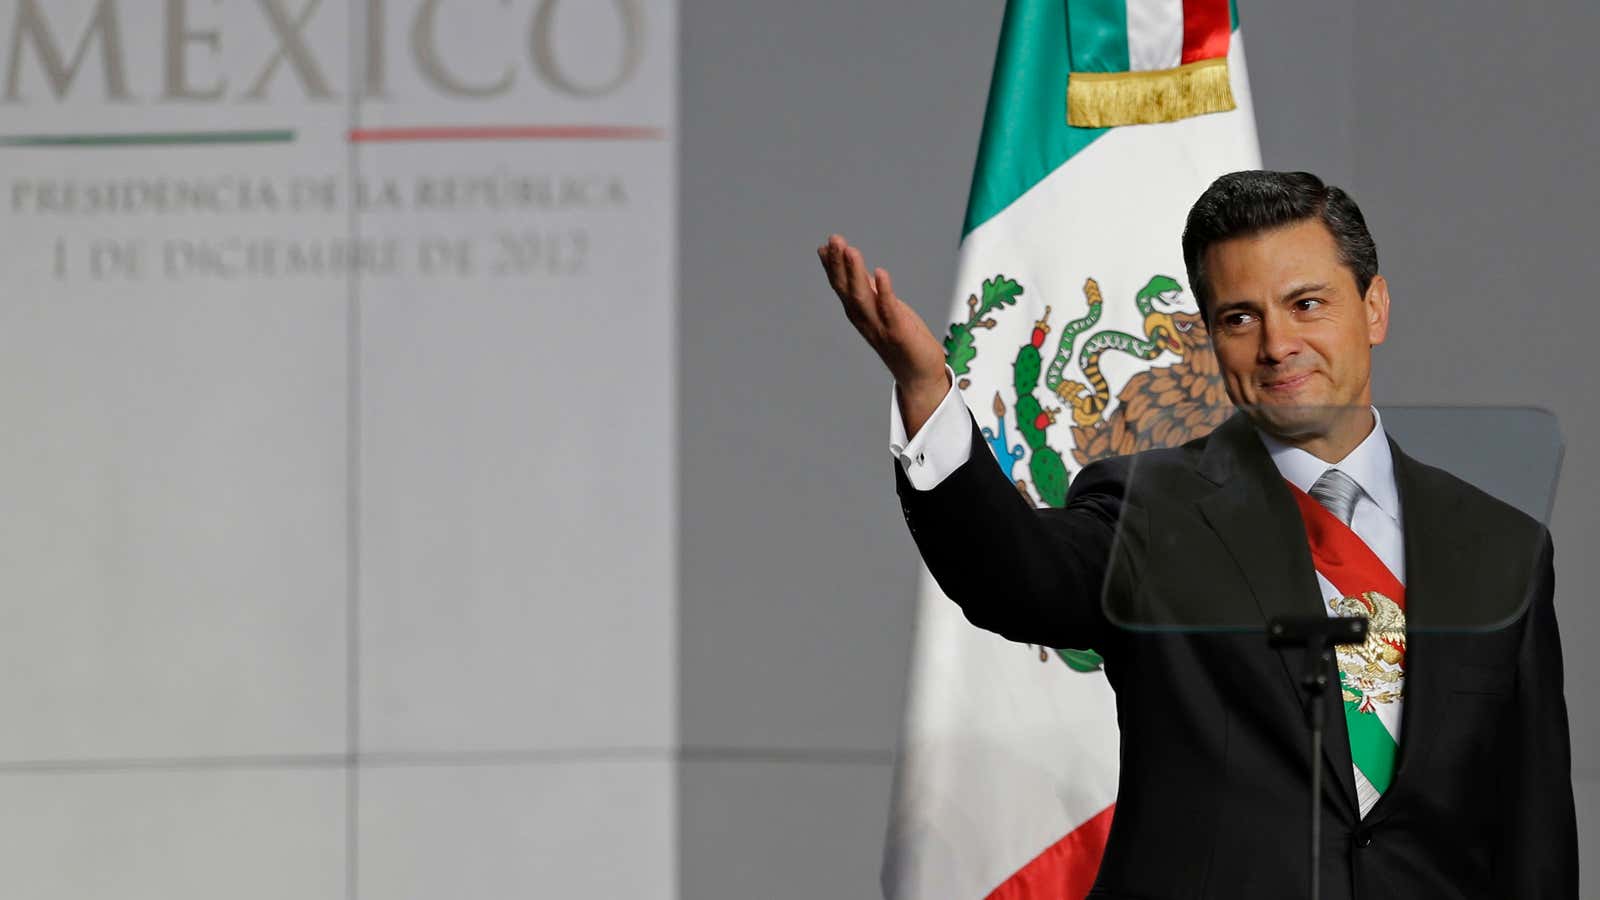 Mexico’s new President Enrique Peña Nieto